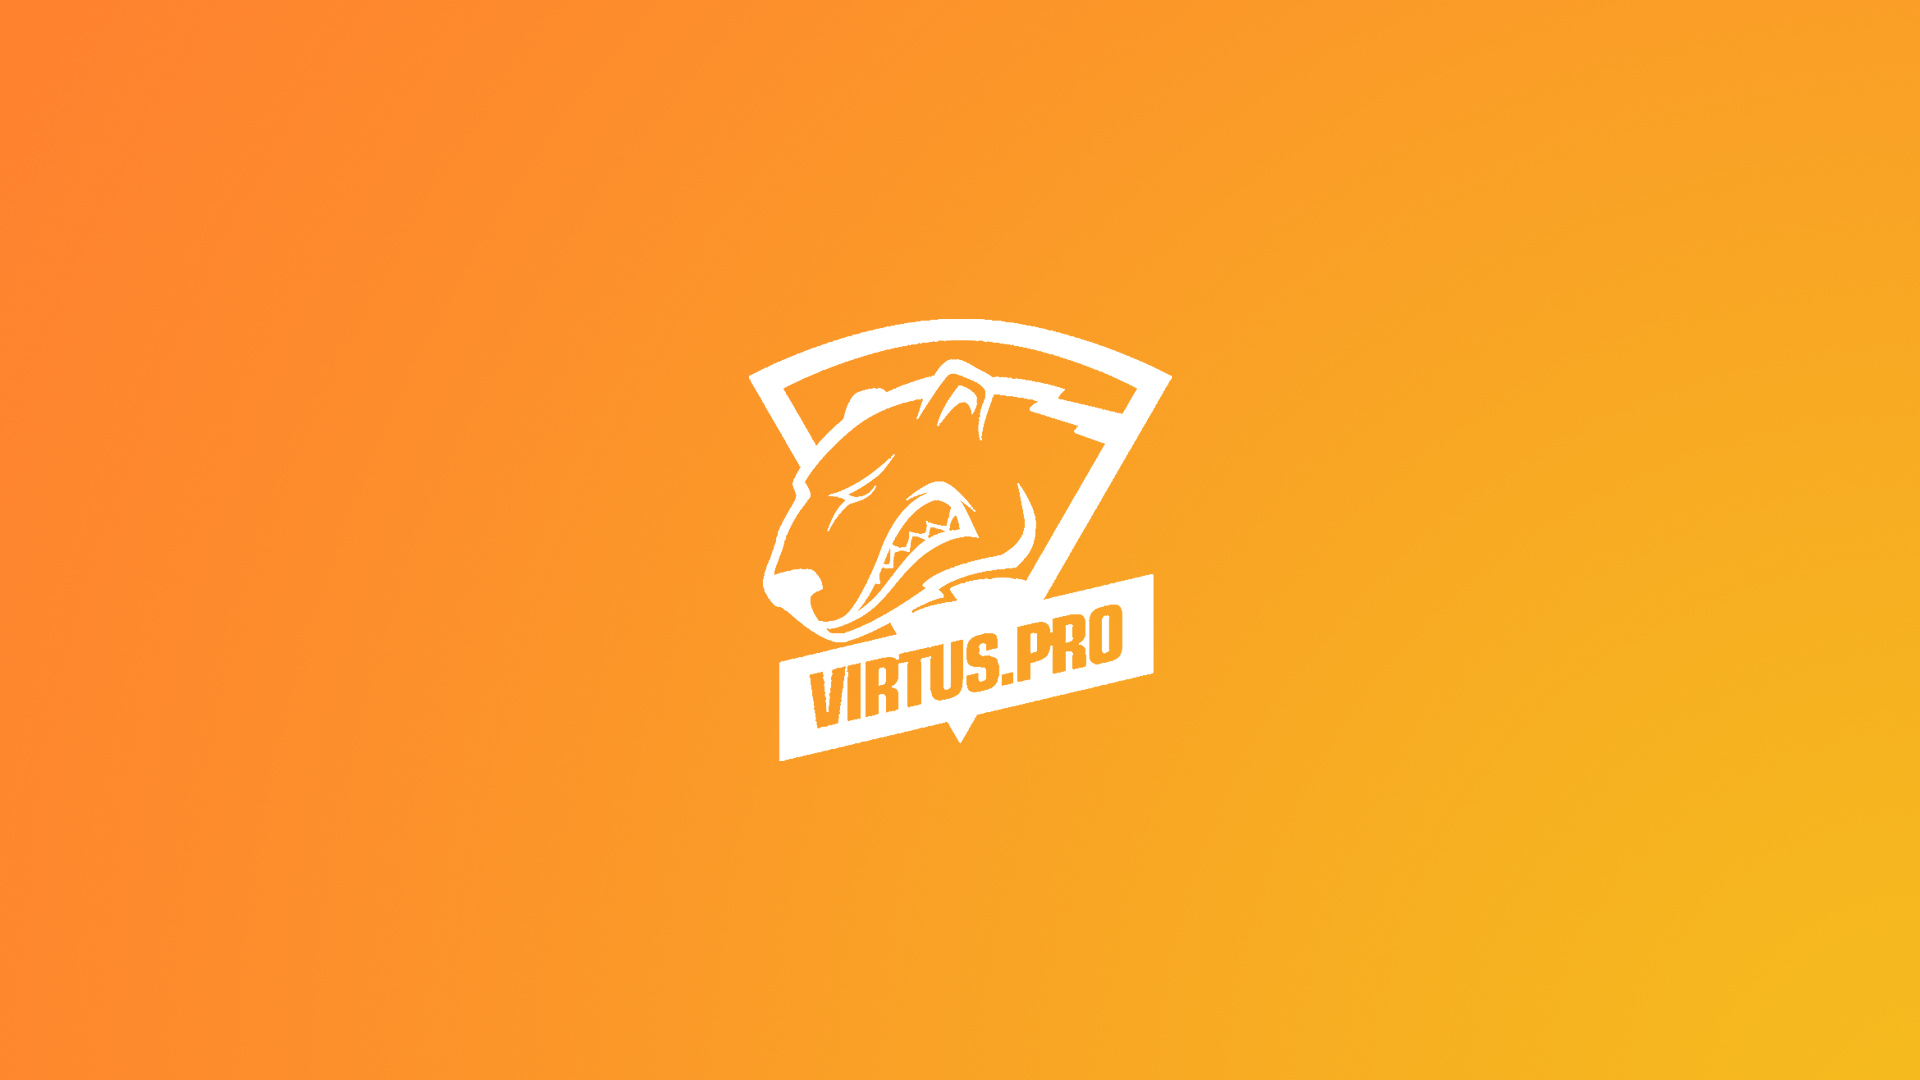 Virtus.pro Wallpaper